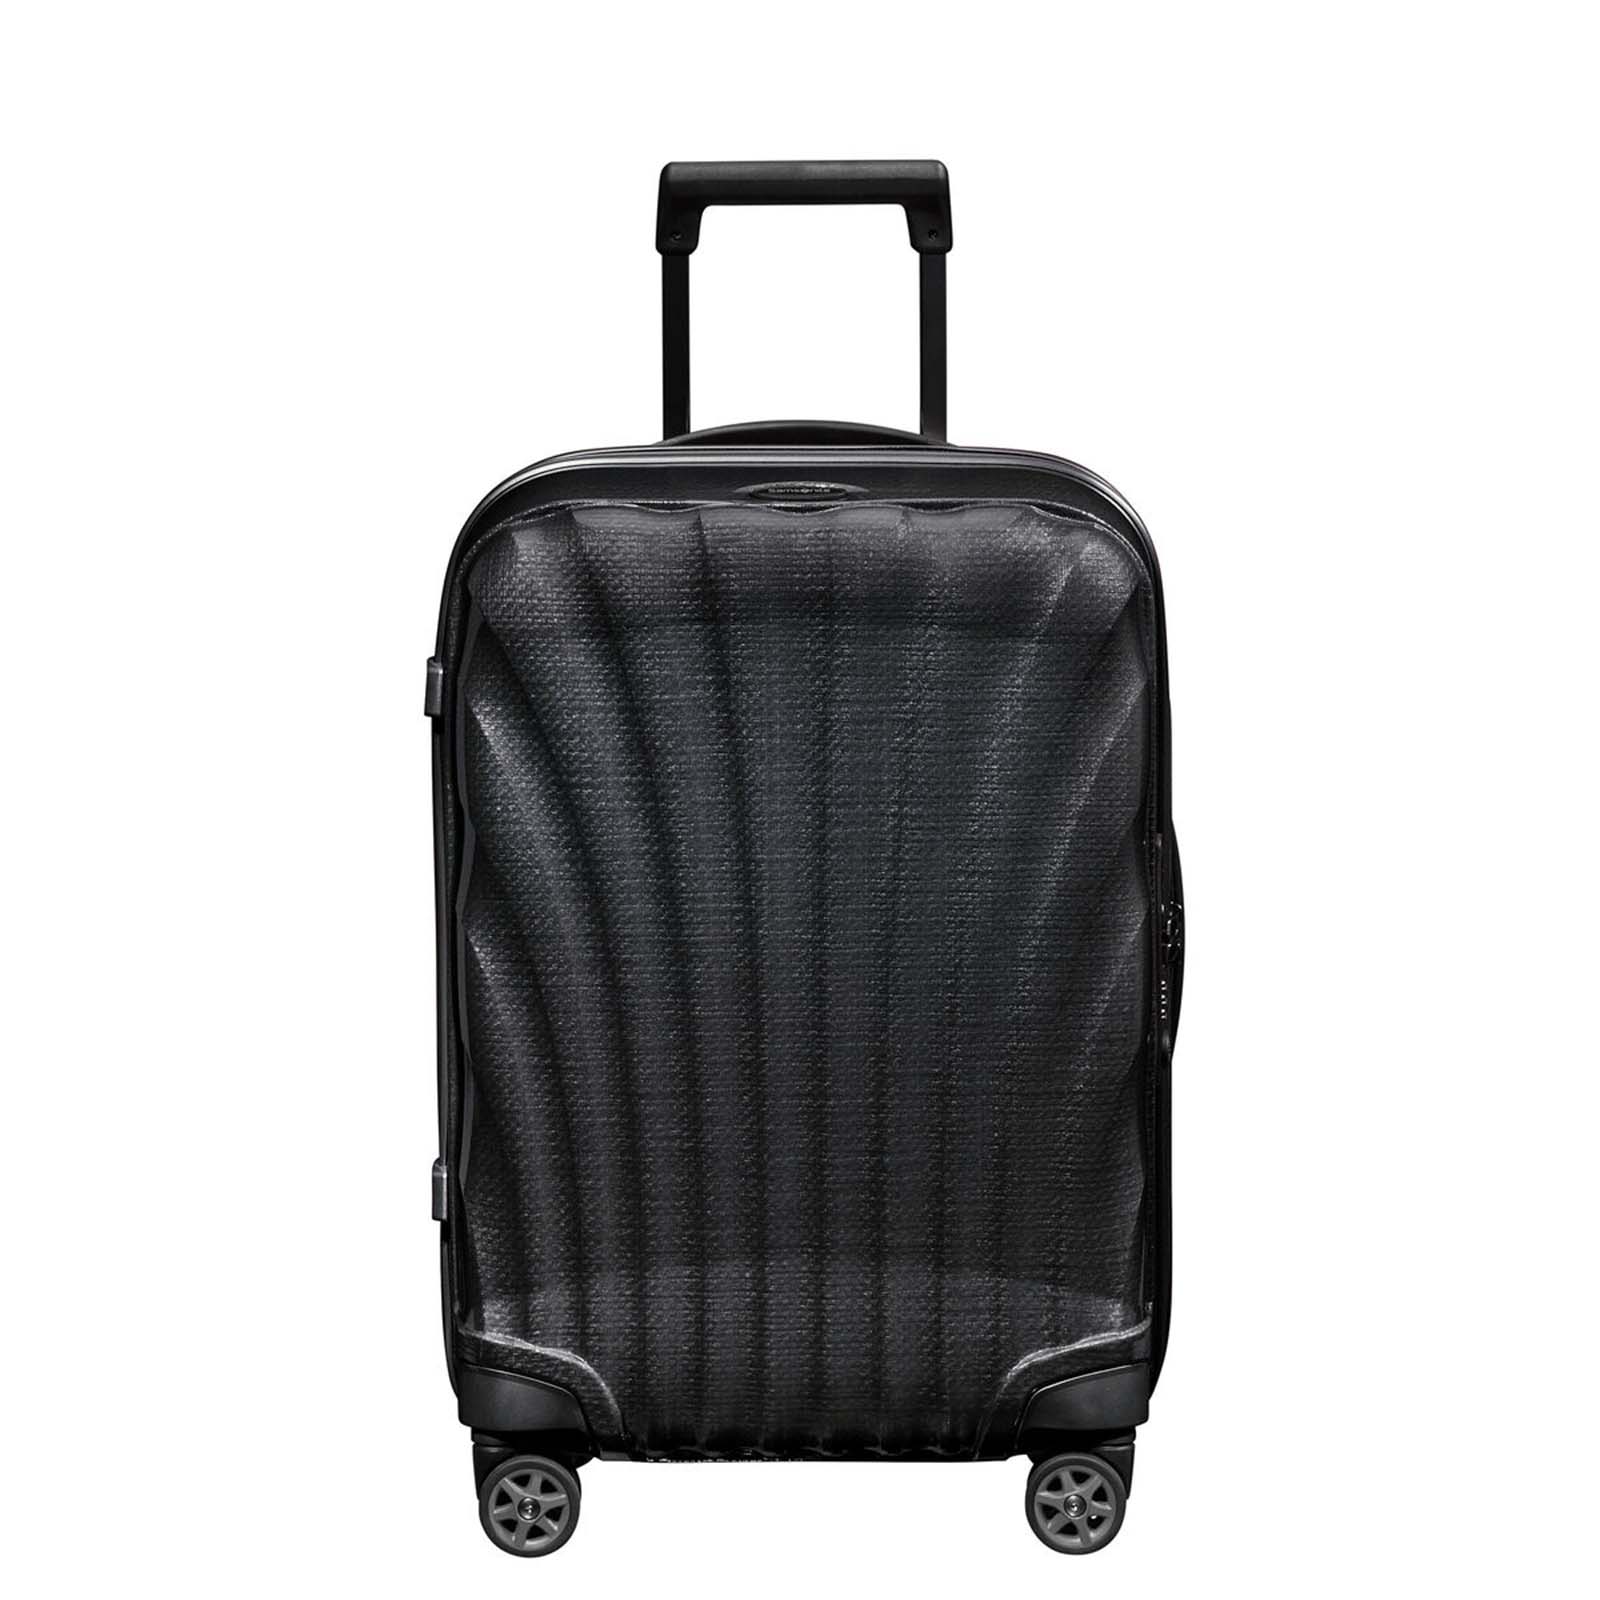 Samsonite-C-Lite-69cm-Suitcase-Black-Front